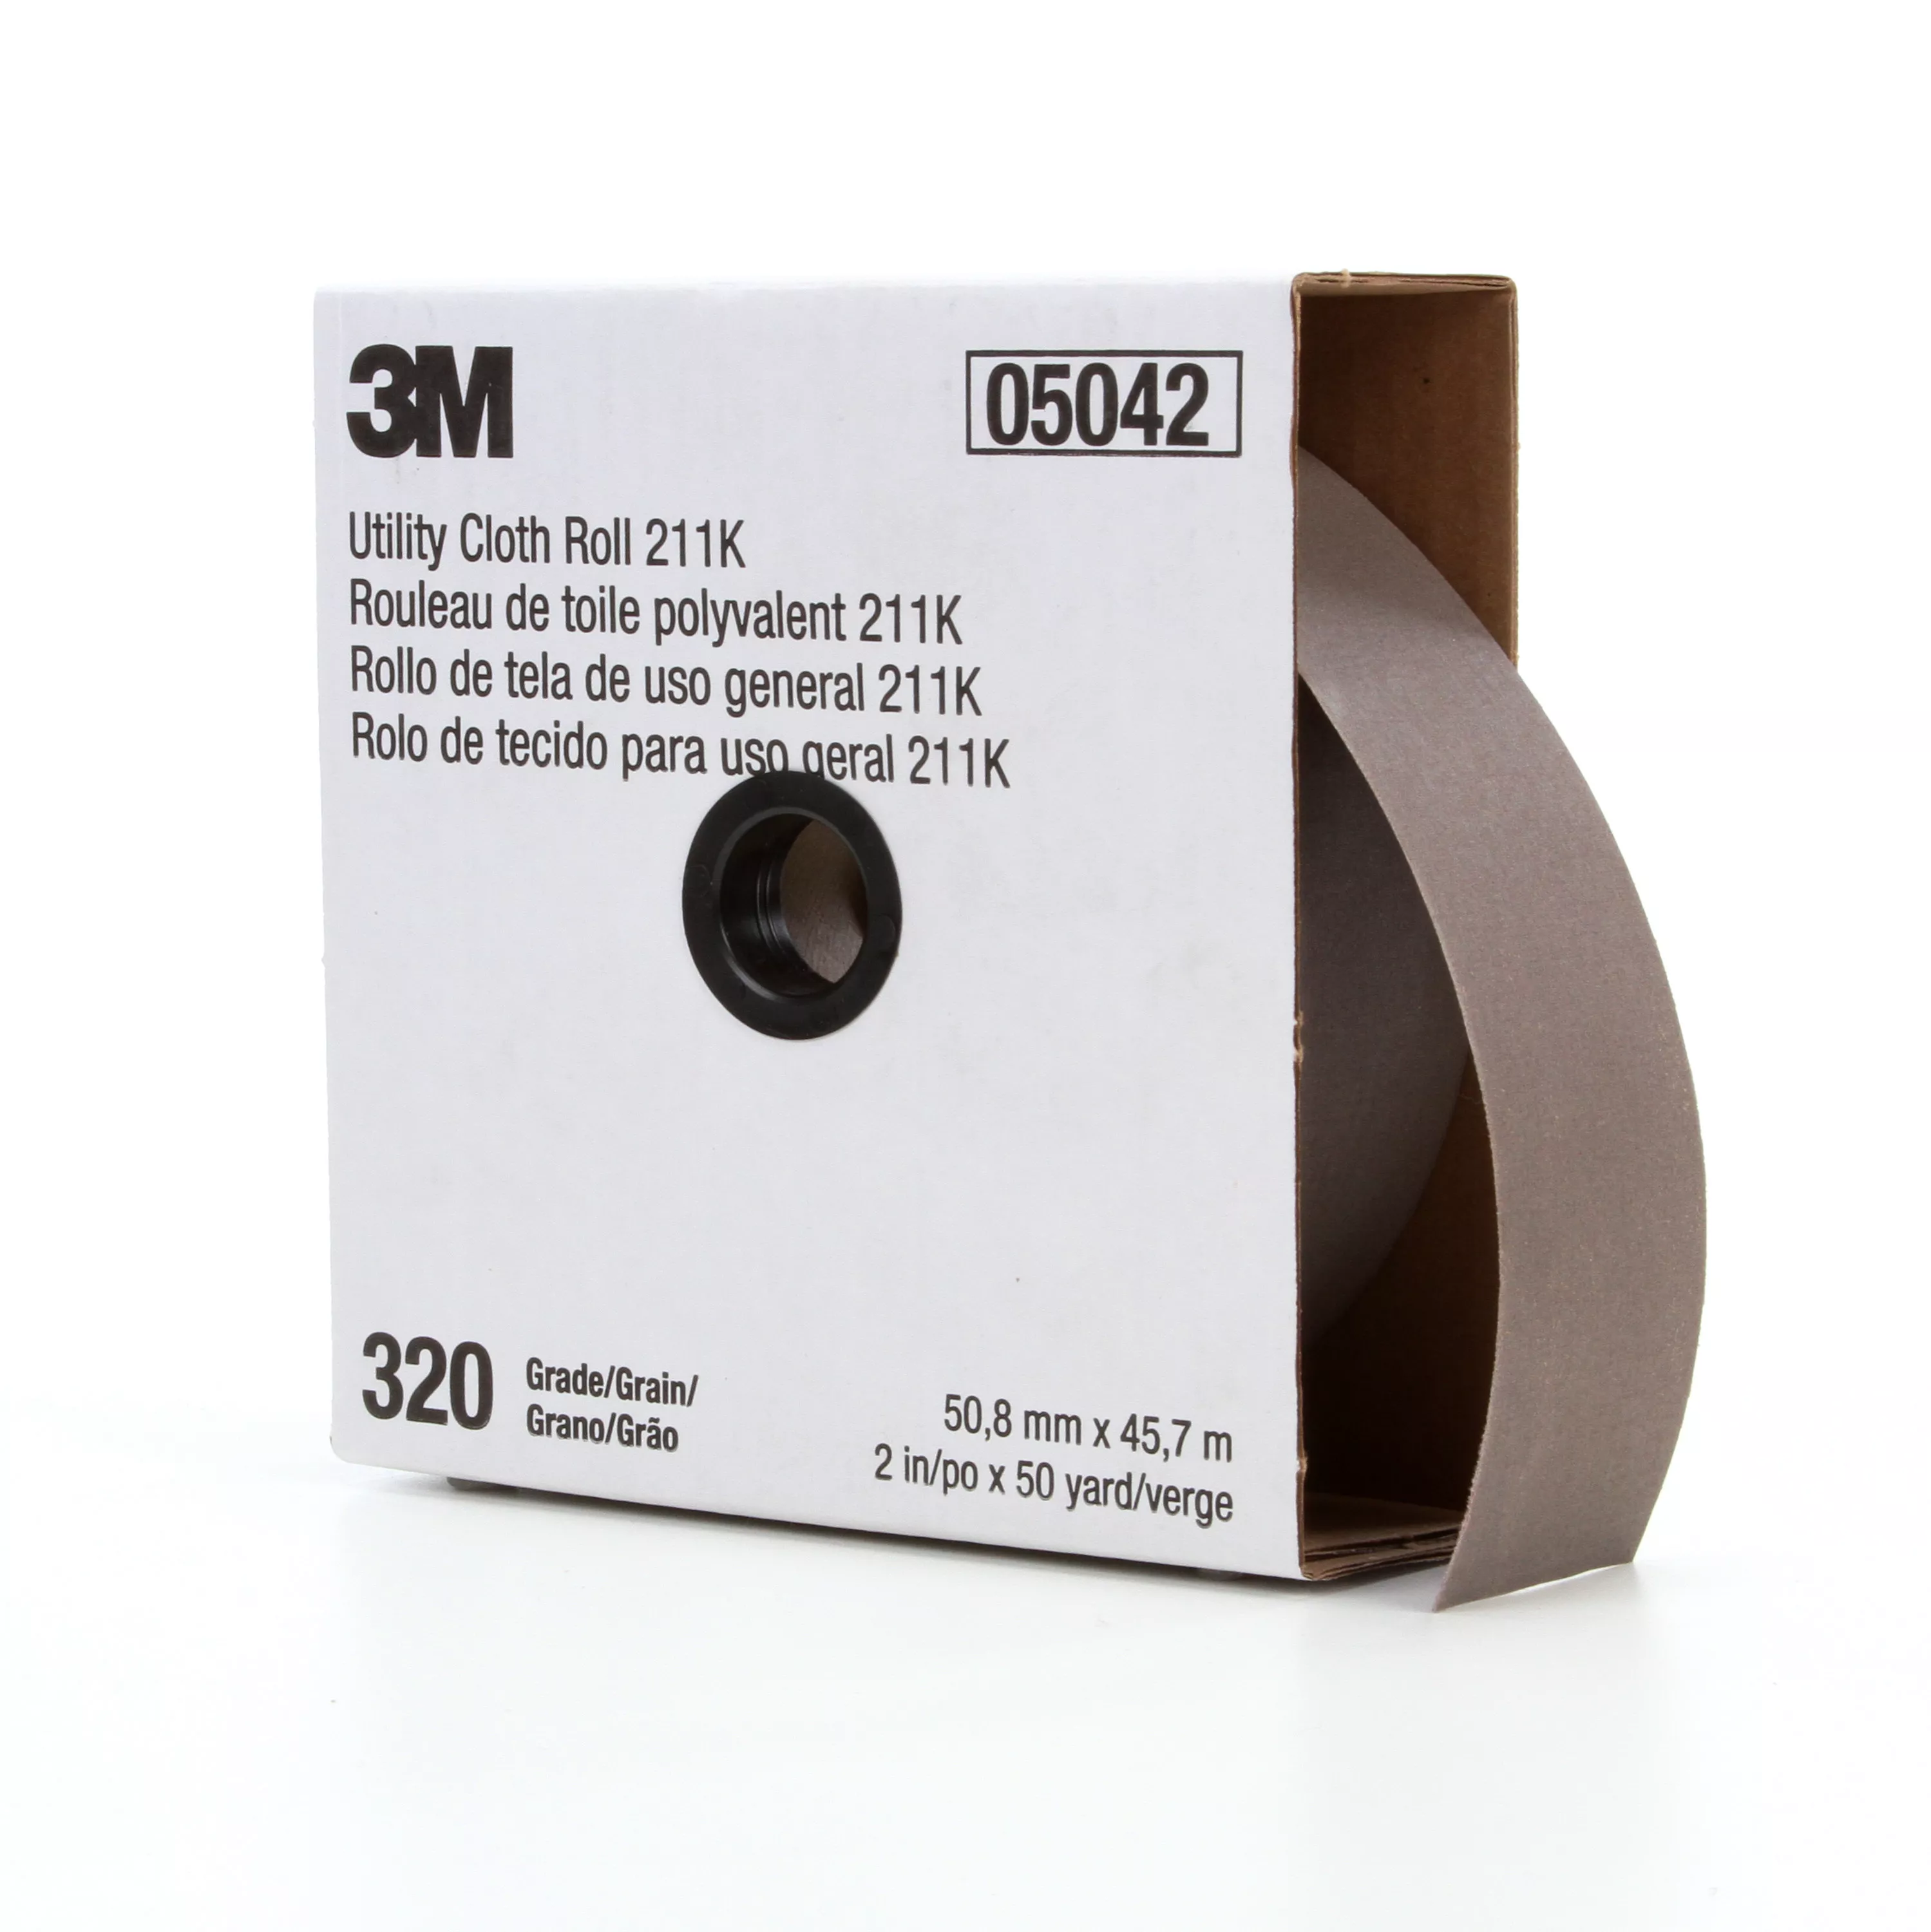 3M™ Utility Cloth Roll 211K, 320 J-weight, 1 in x 50 yd, Full-flex, 5
ea/Case